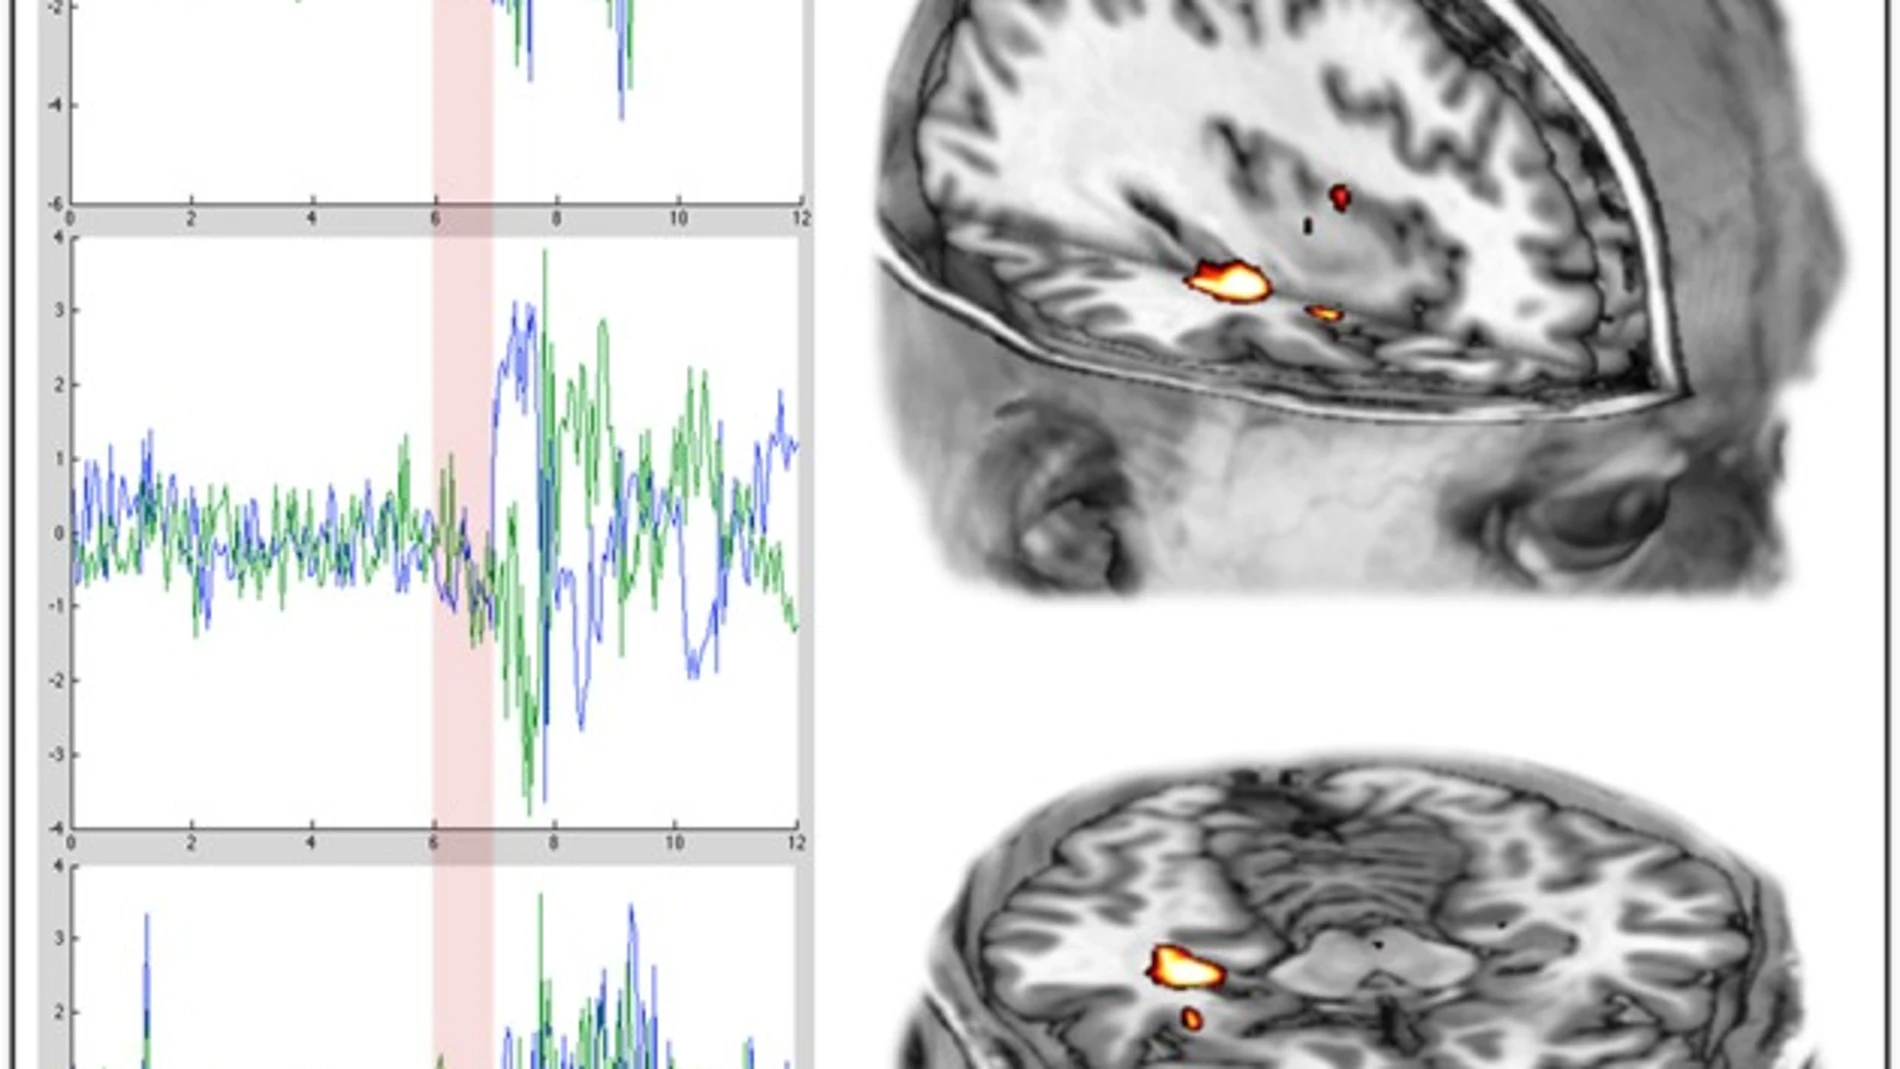 Las tres gráficas de la izquierda muestran la actividad cerebral de tres sujetos antes y después (separación en rojo) de una infusión de psilocibina. A la derecha se aprecia la activación del hipocampo